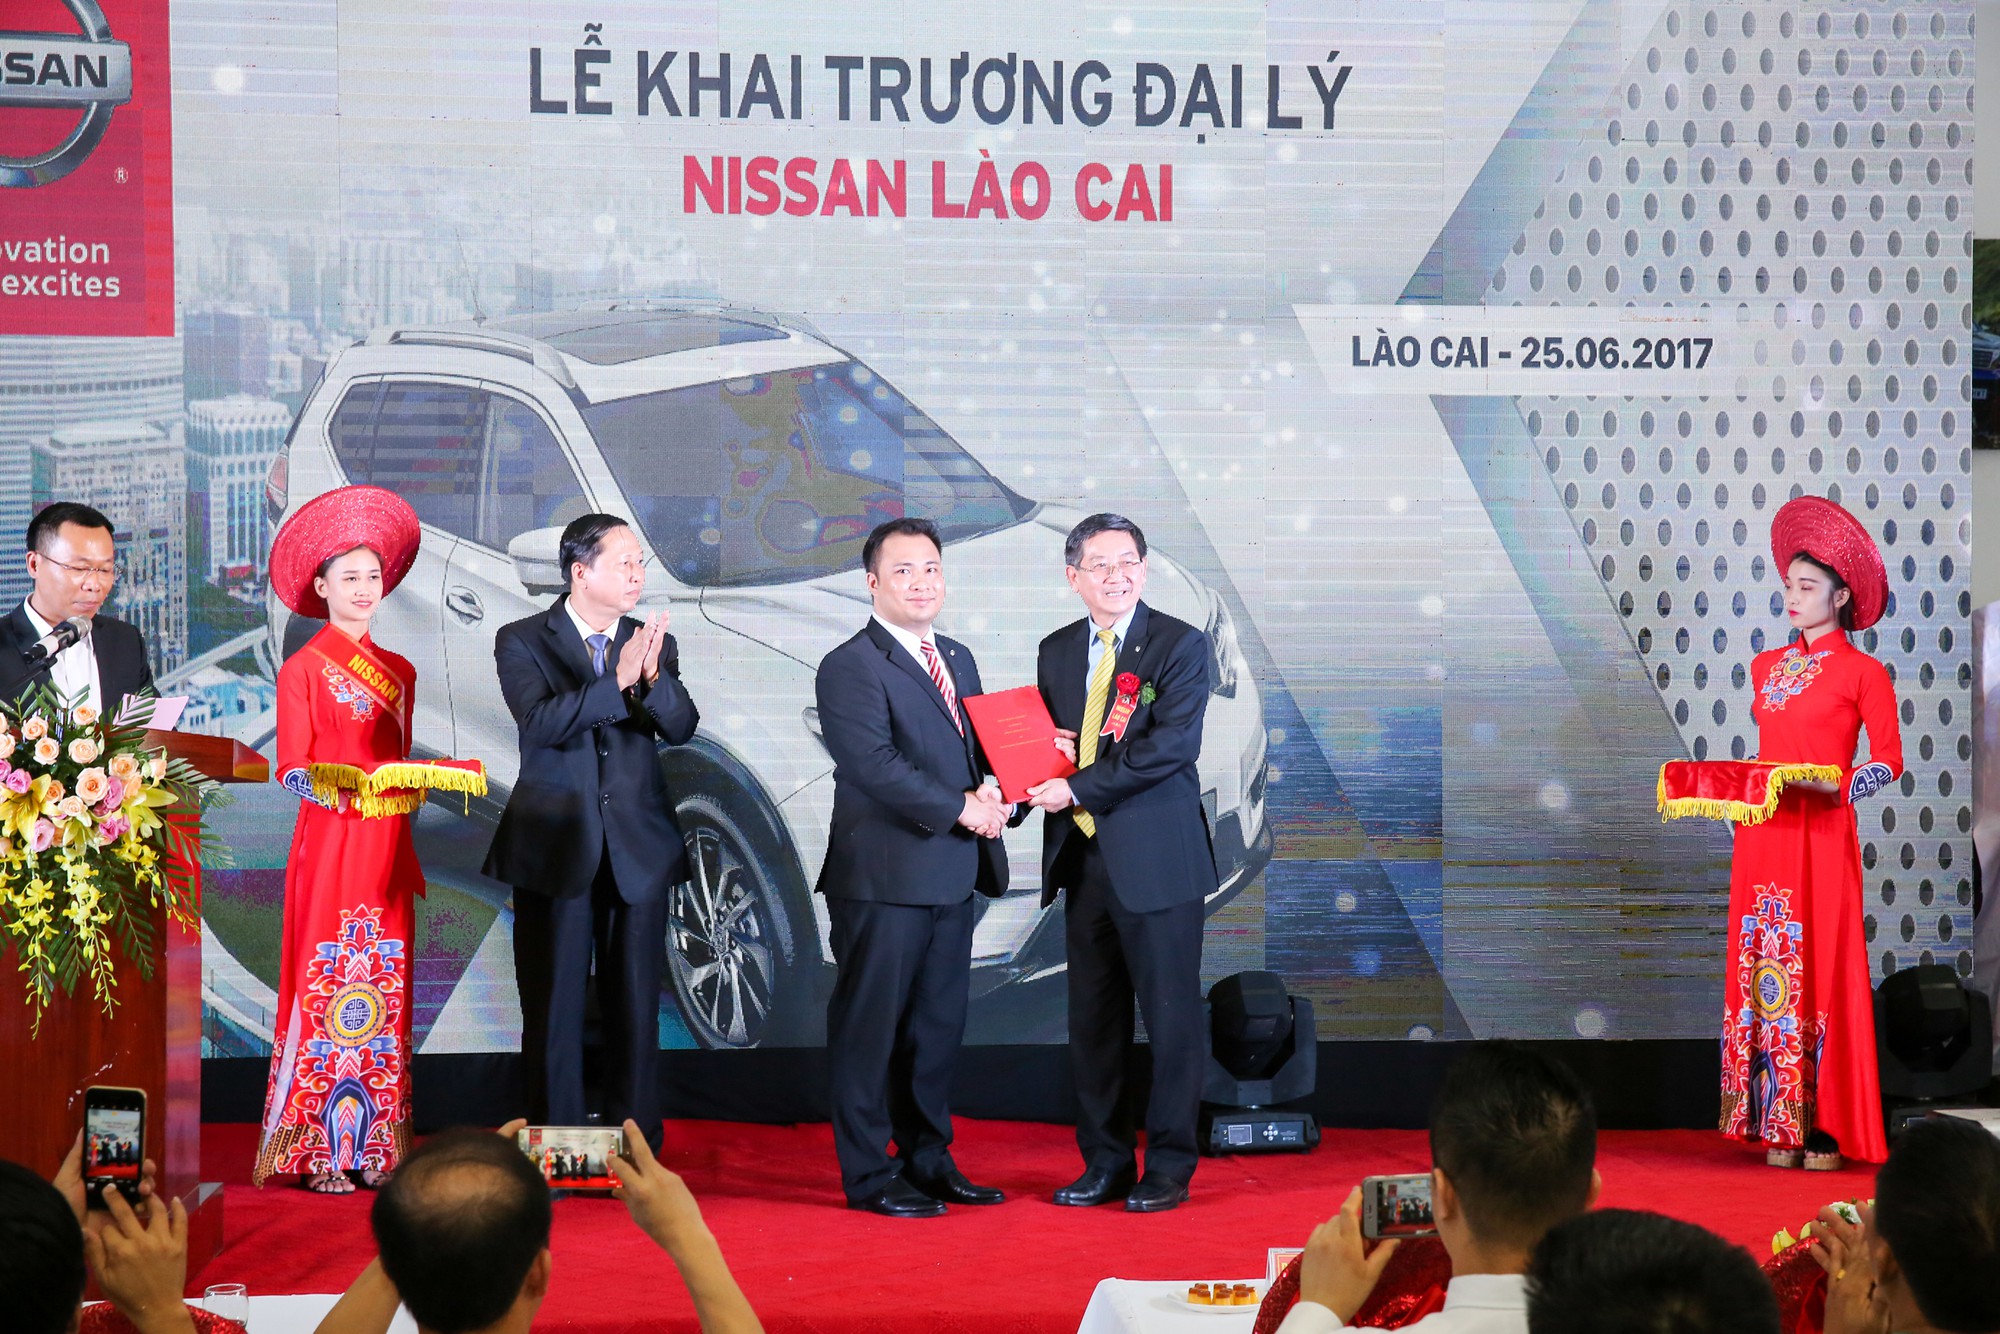 Nissan Việt Nam chính thức trao Hợp đồng đại lý cho Nissan Lào Cai